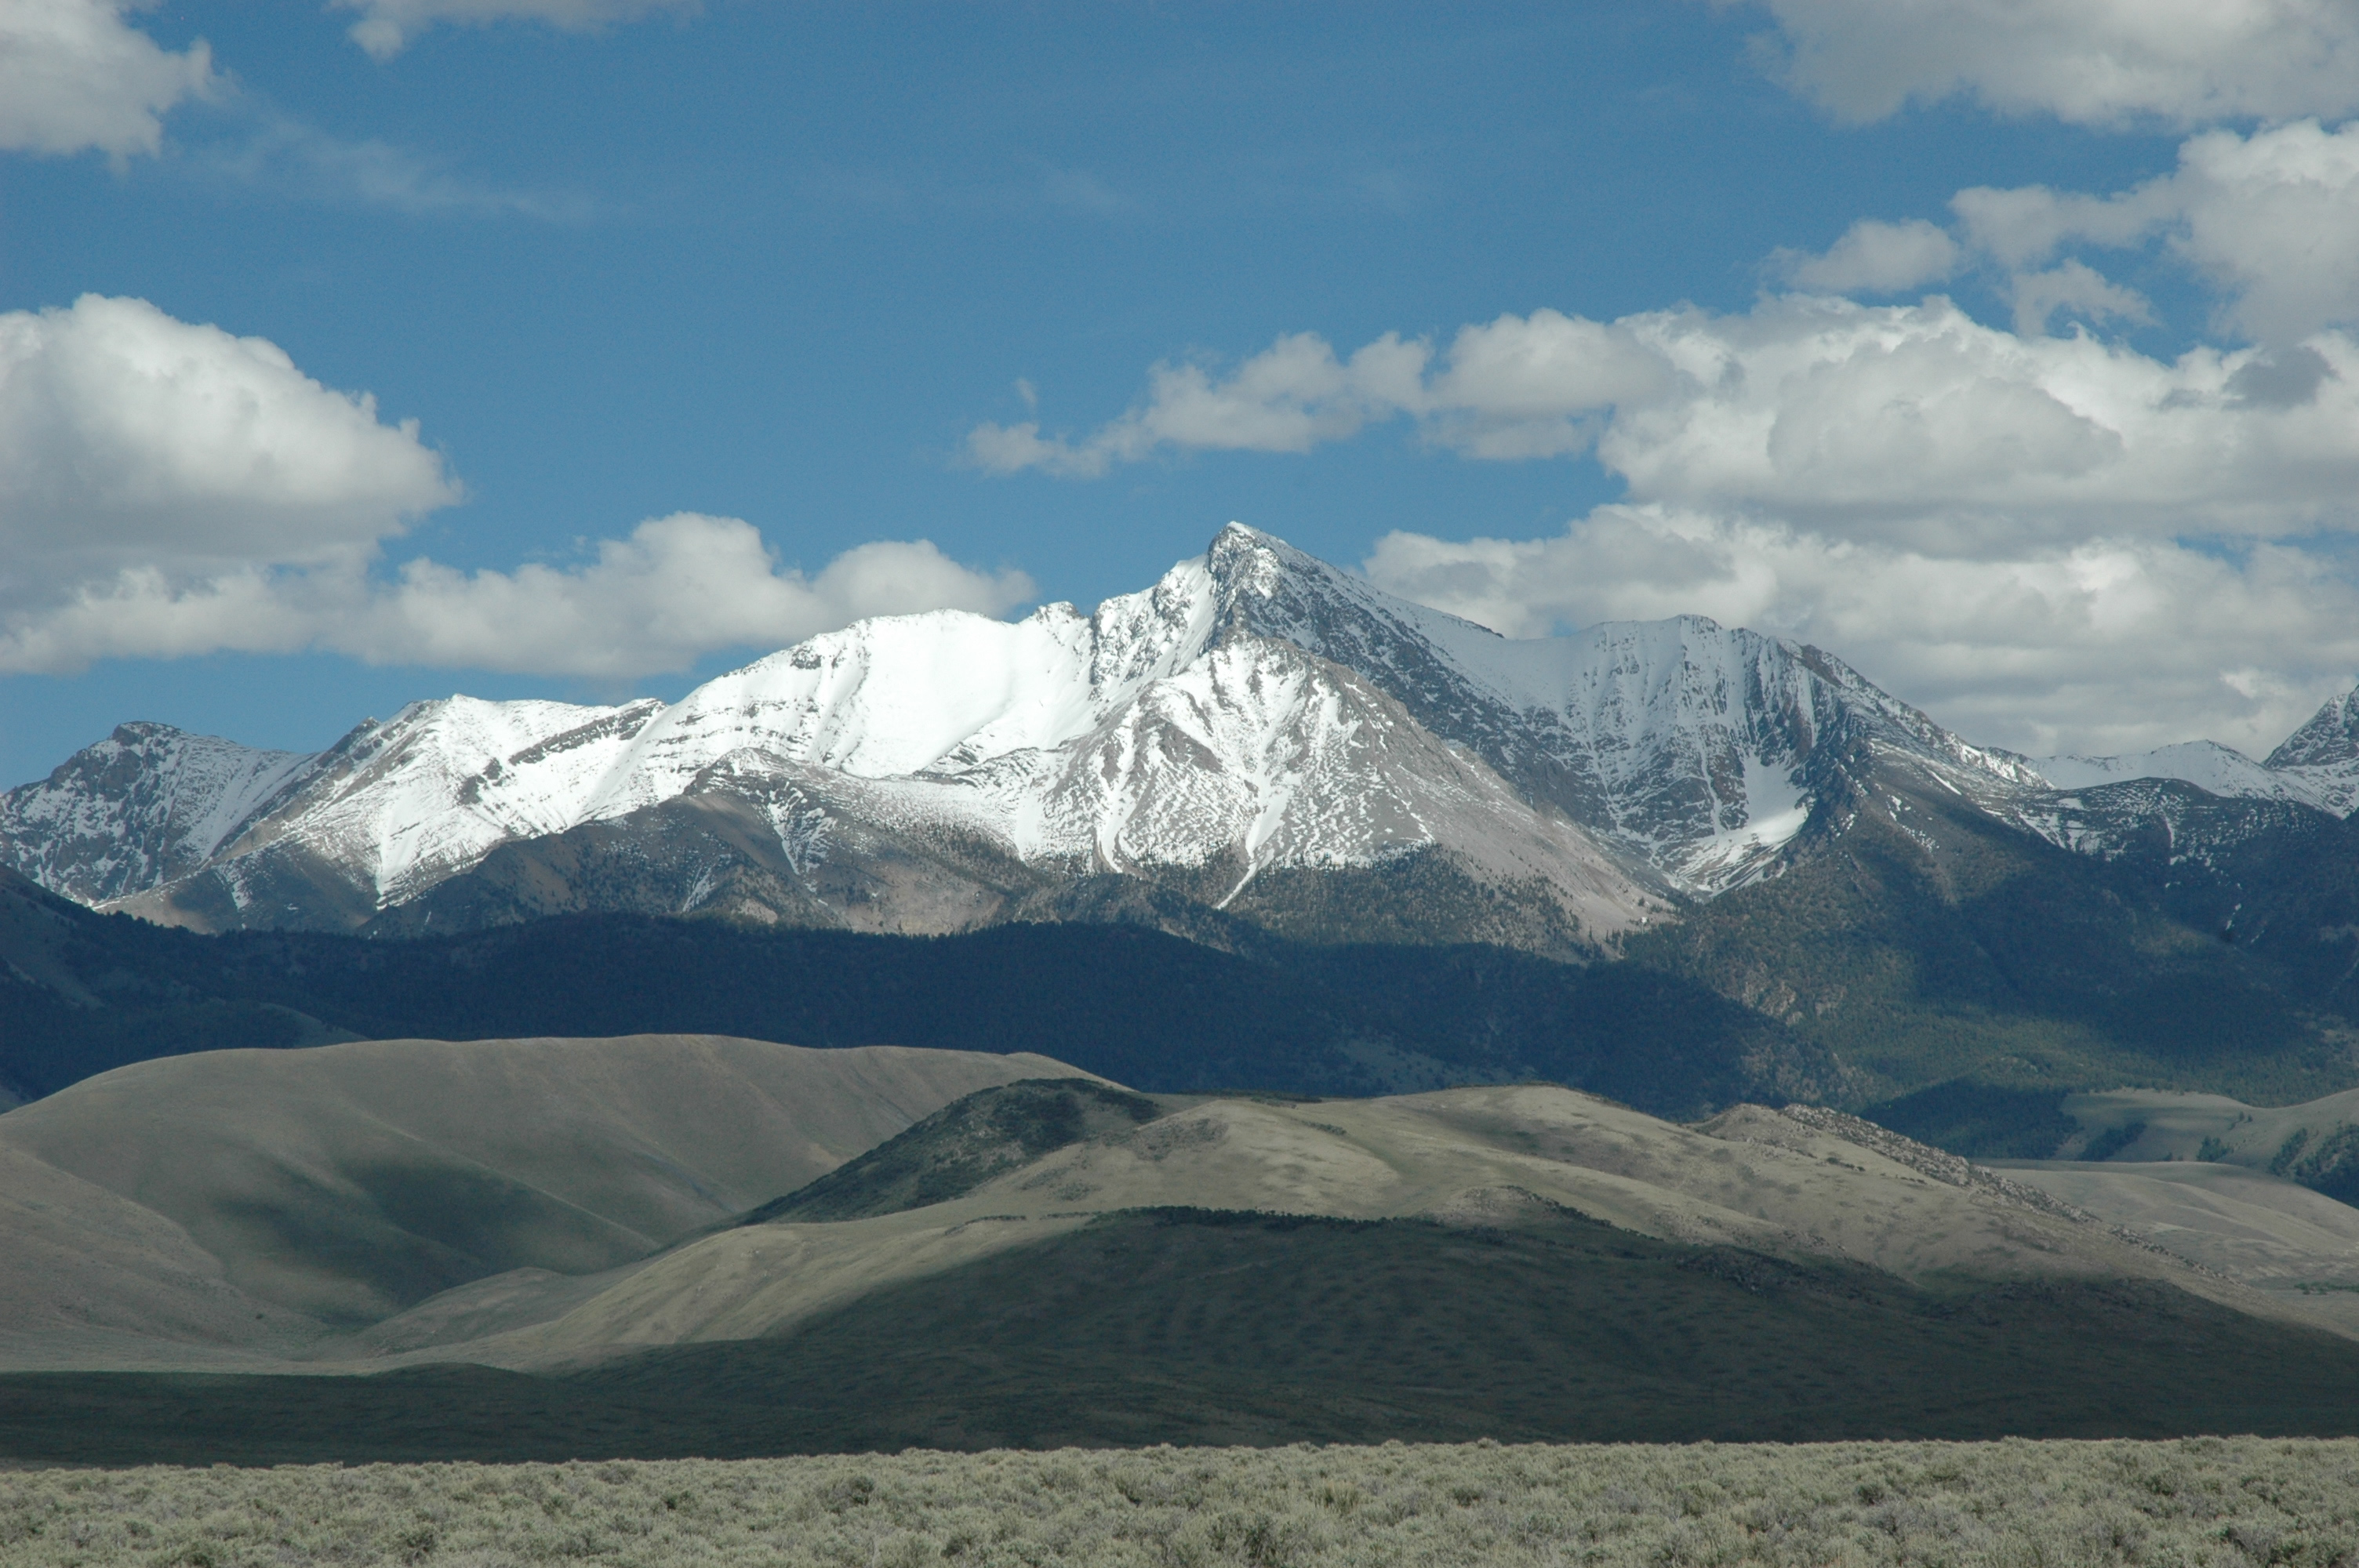 Borah Peak, June, 2007